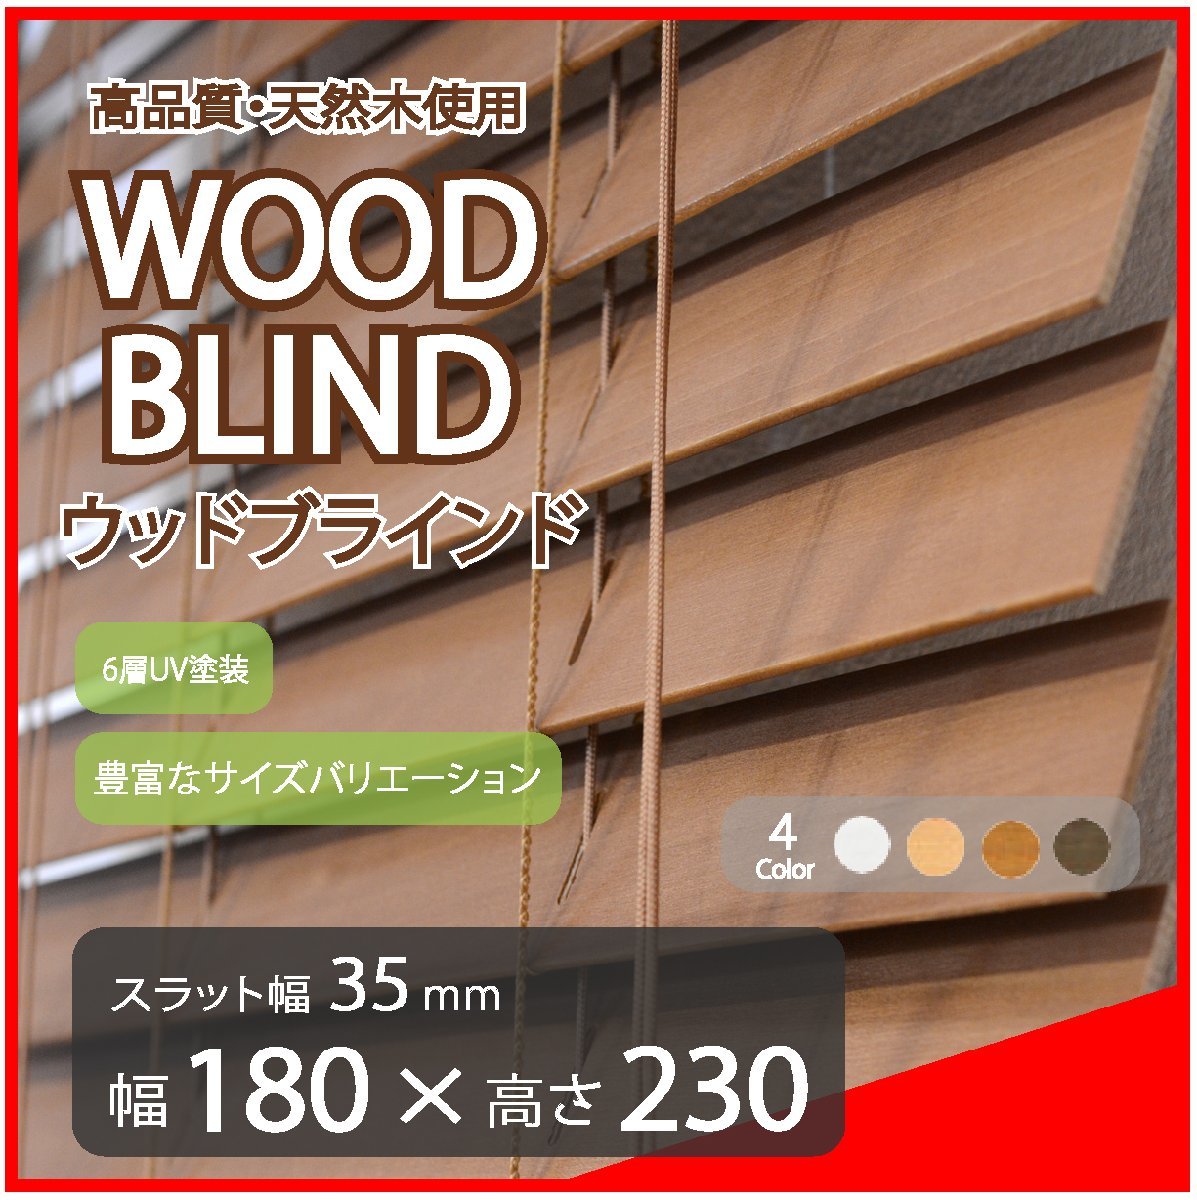 高品質 ウッドブラインド 木製 ブラインド 既成サイズ スラット(羽根)幅35mm 幅180cm×高さ230cm ブラウン